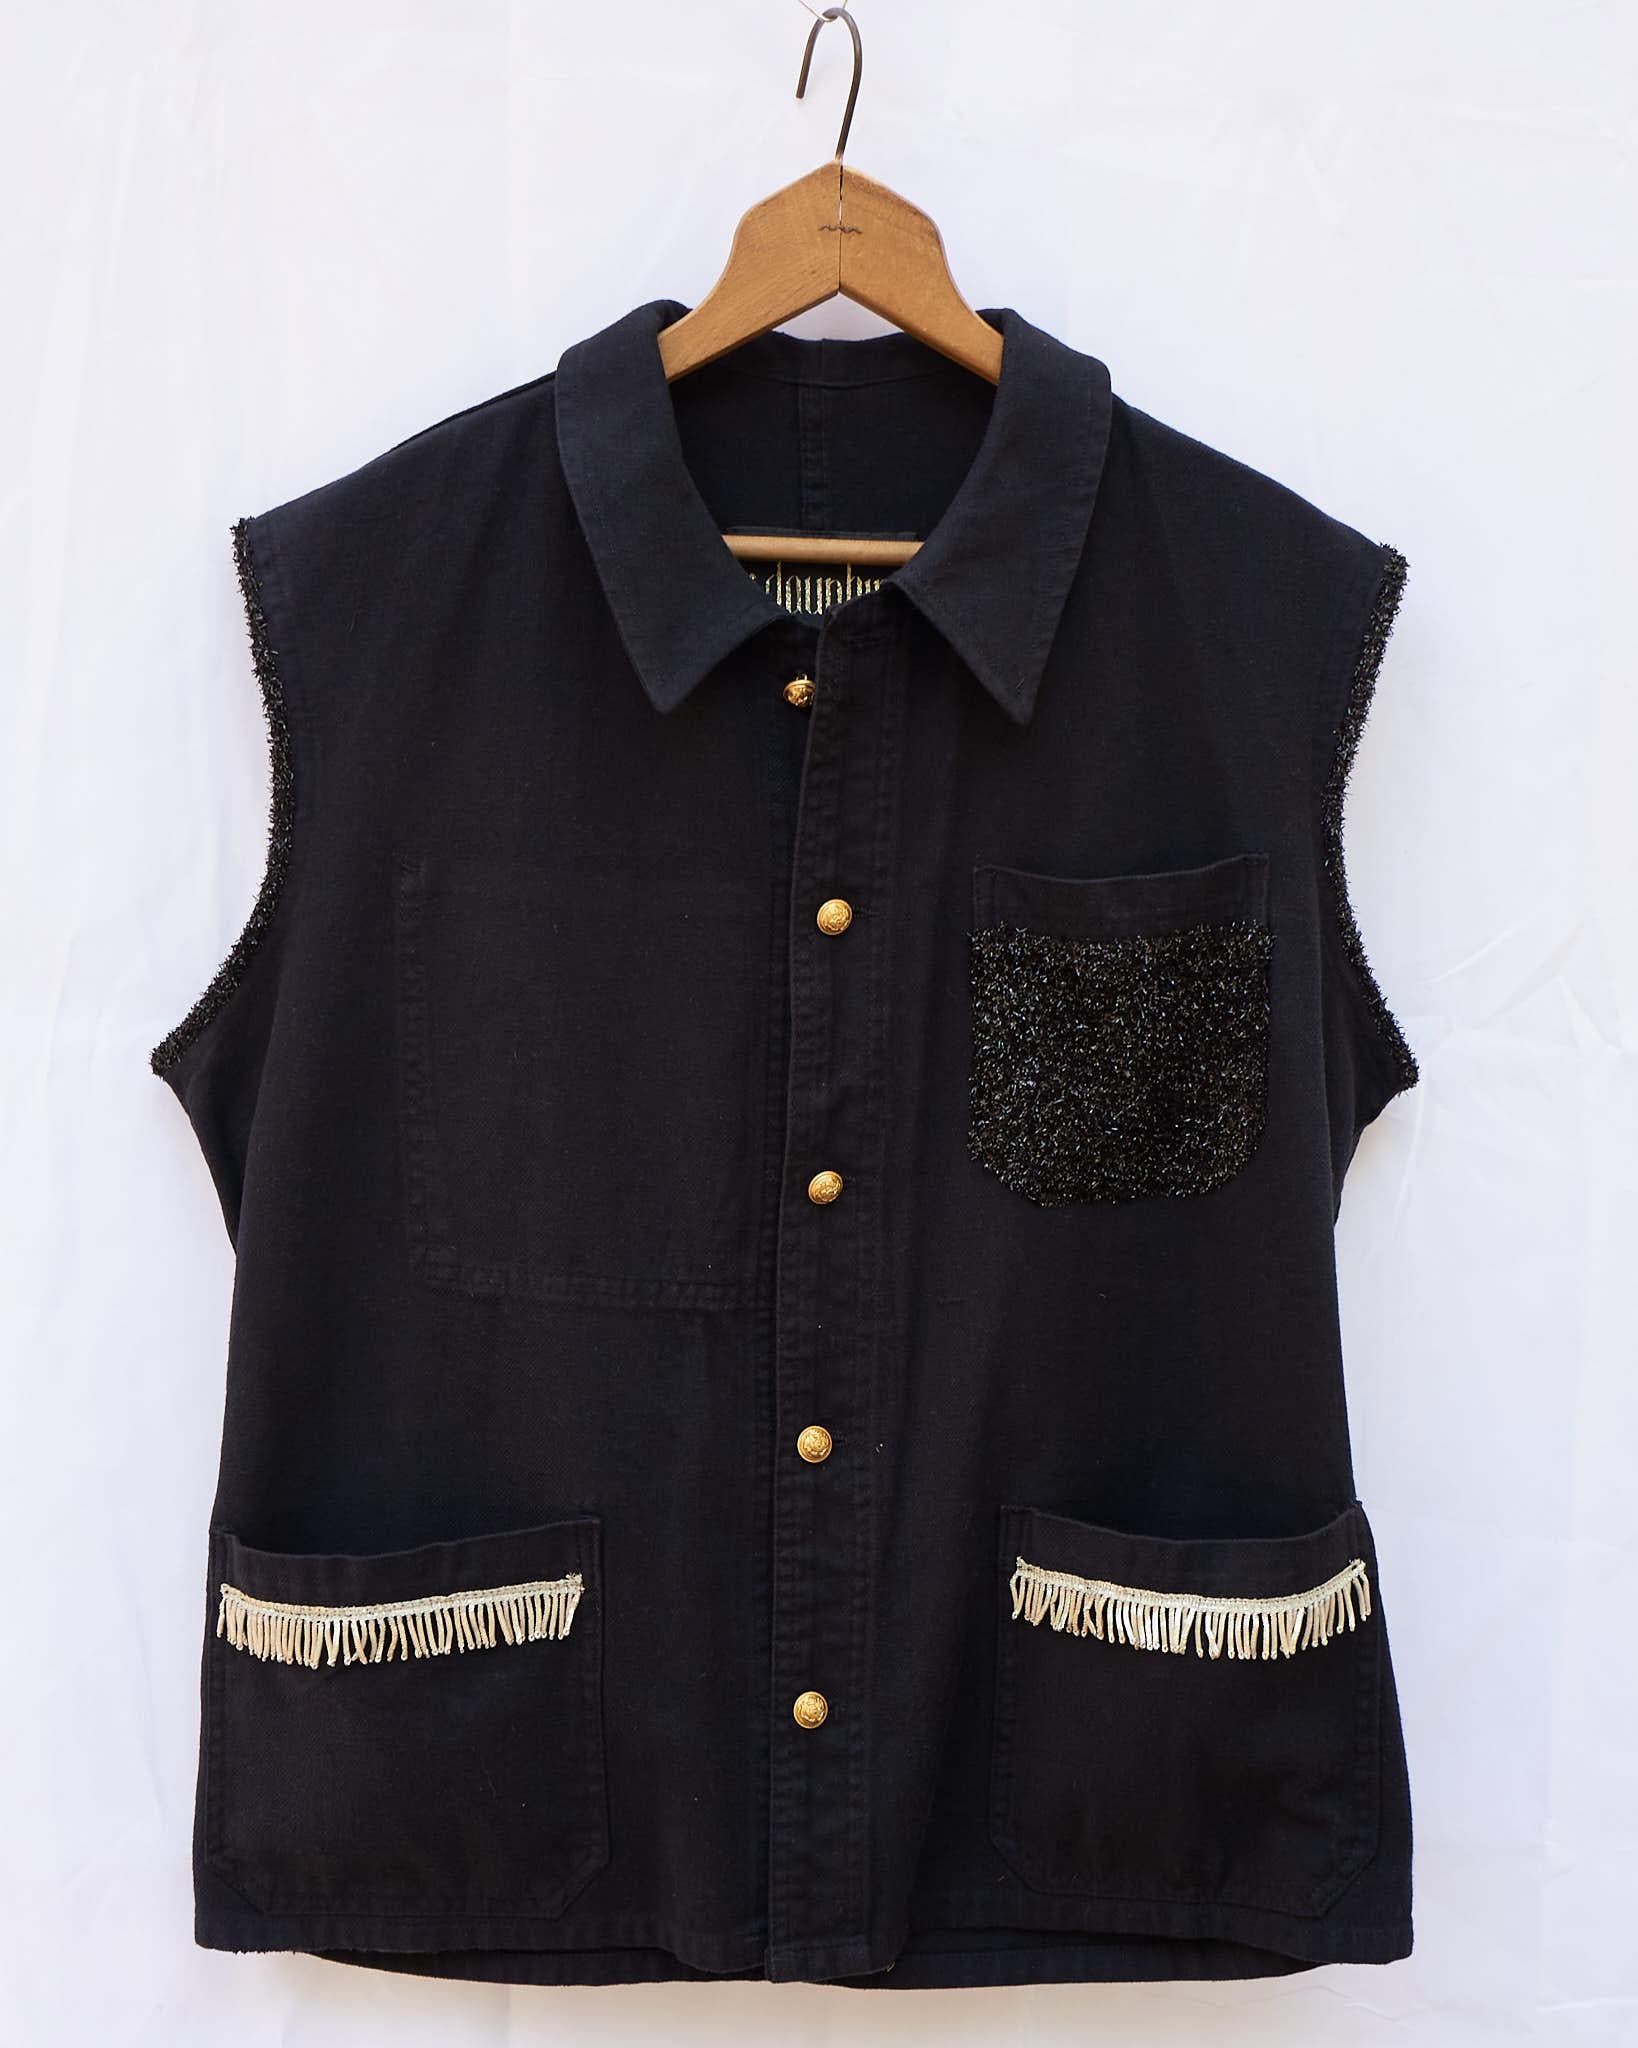 Sleeveless Vest Jacket Black French Work Wear Fringe Embellished J Dauphin 1